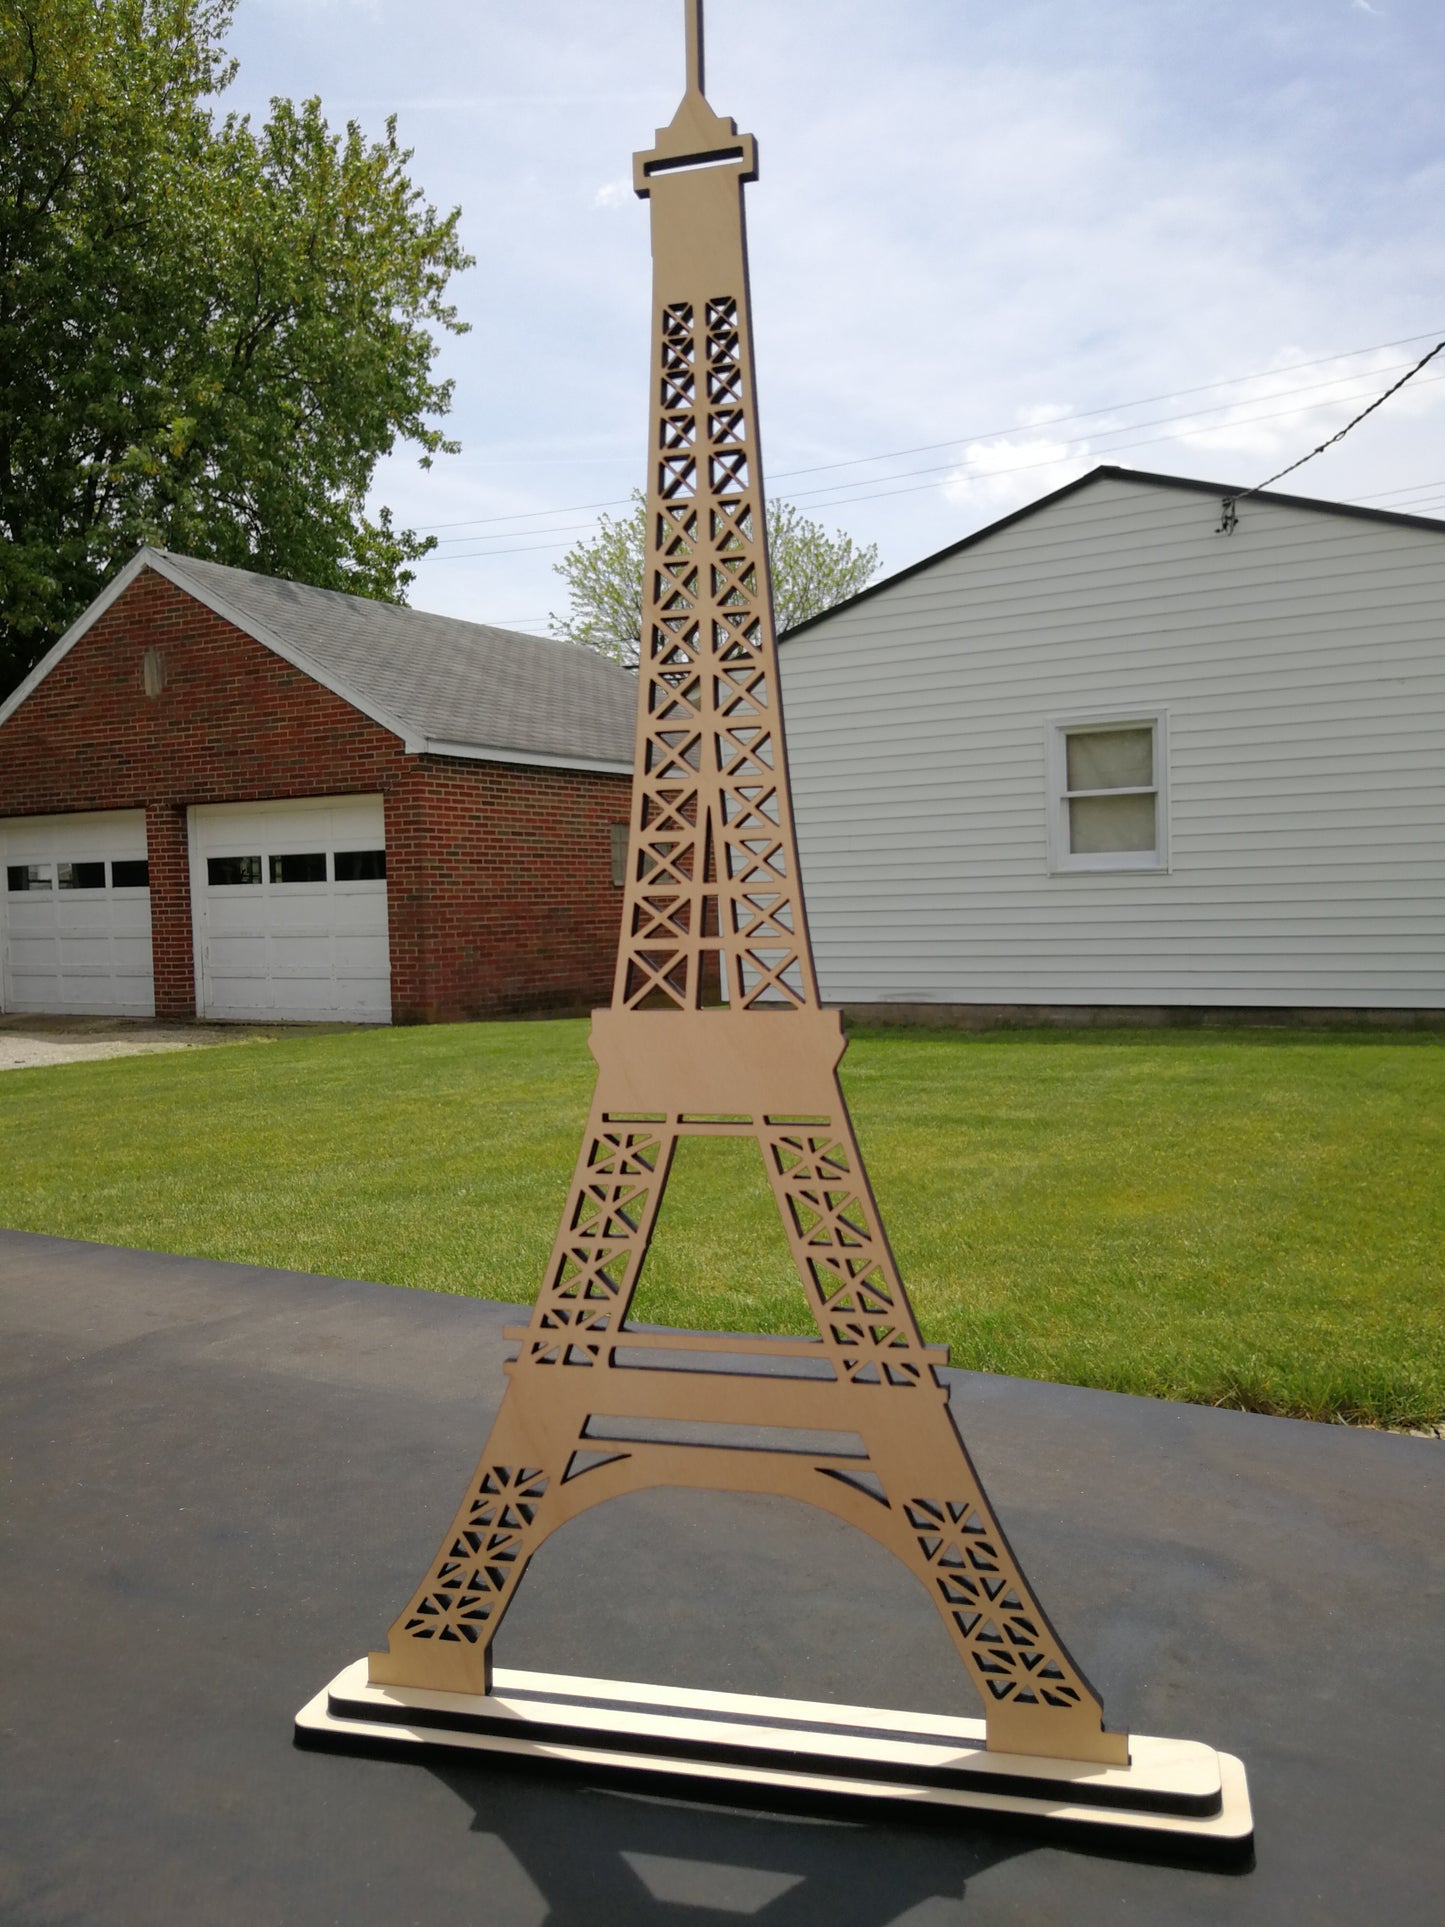 Eiffel Tower